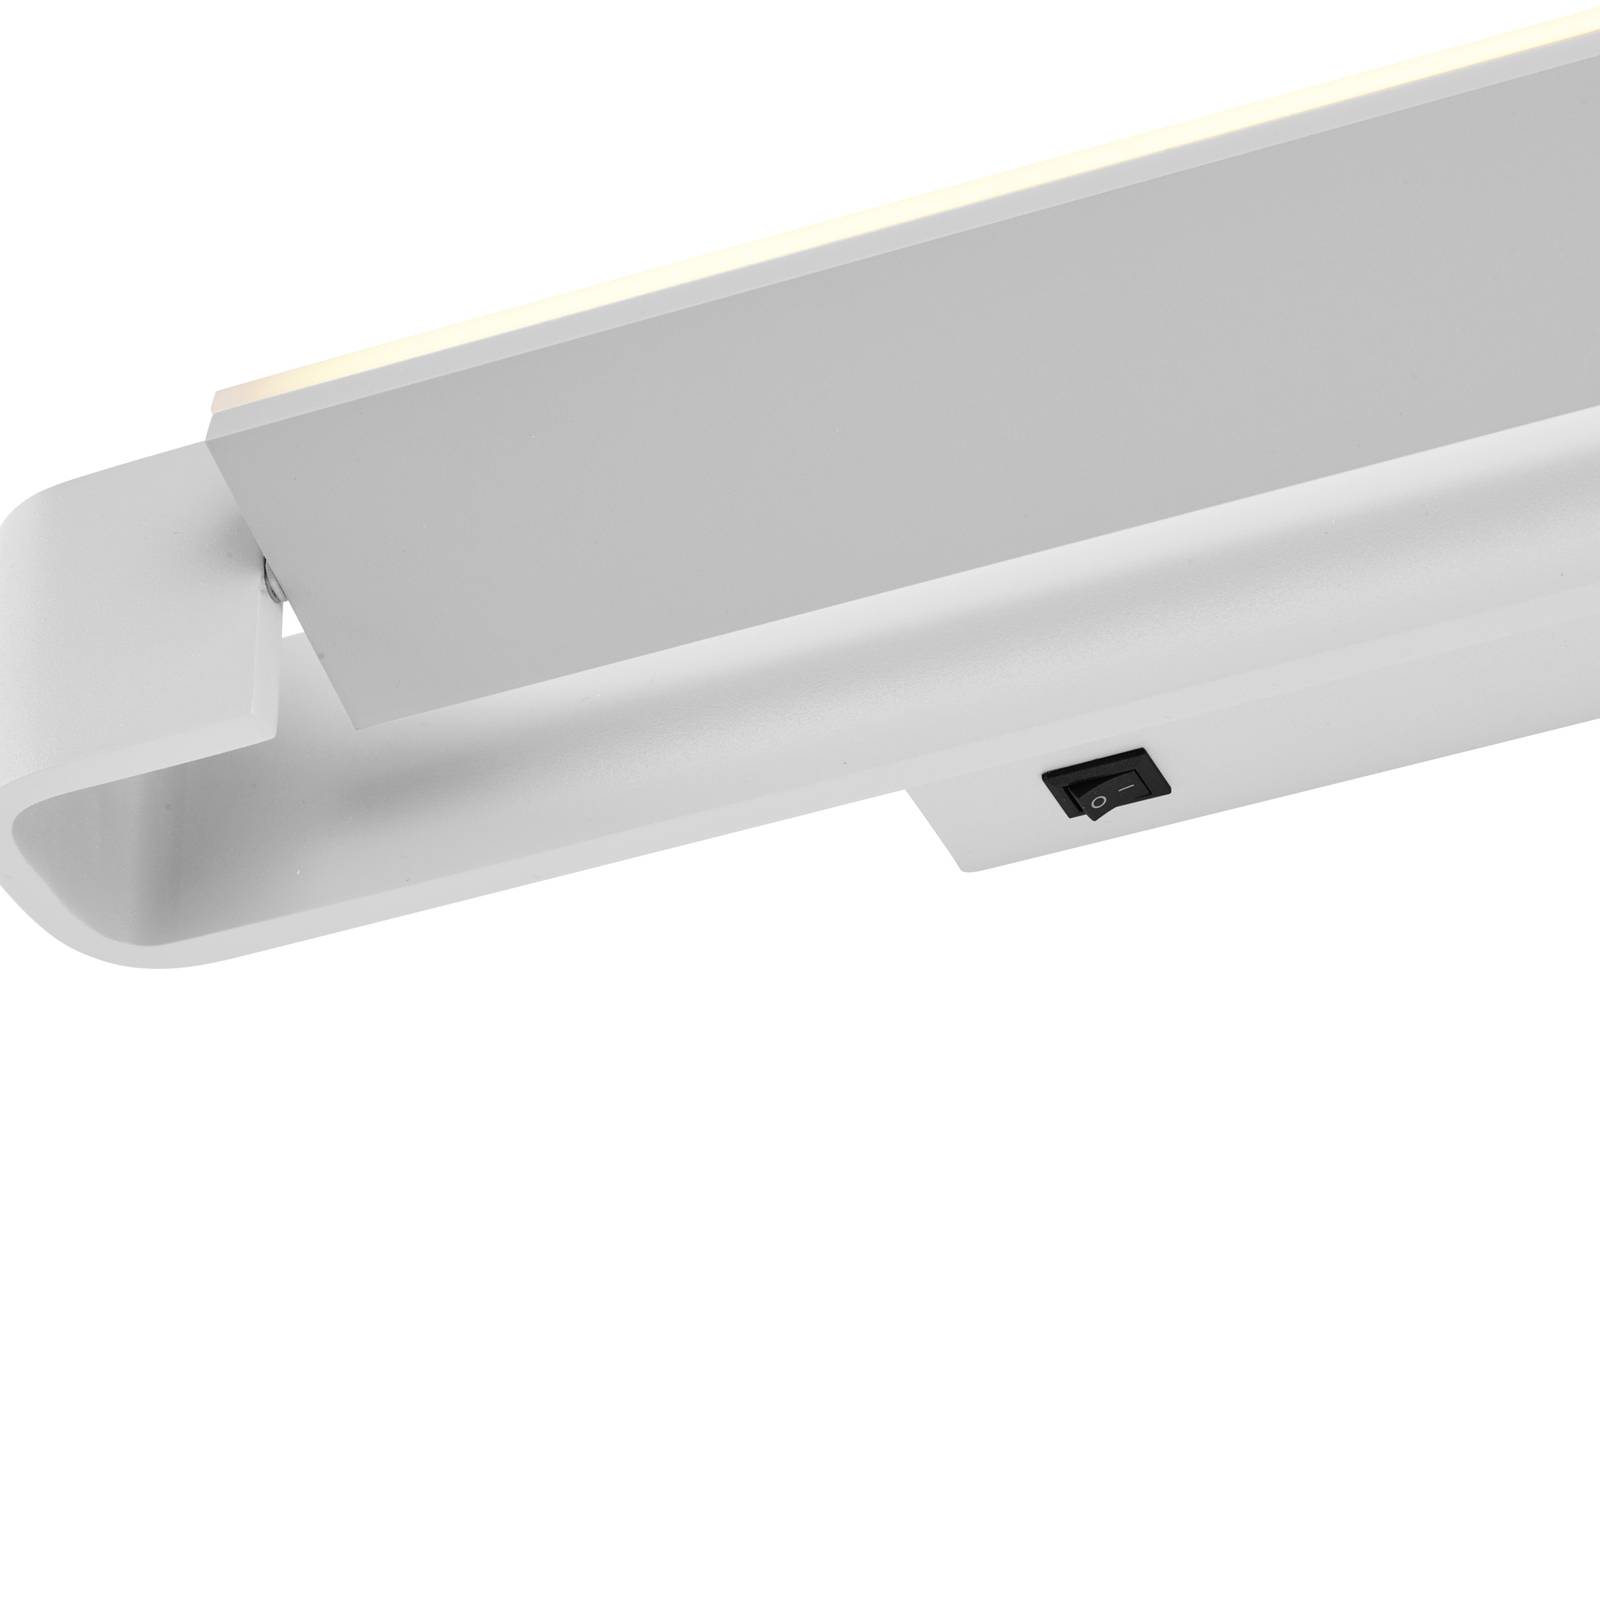 LED fali világítás Box, forgatható, fehér